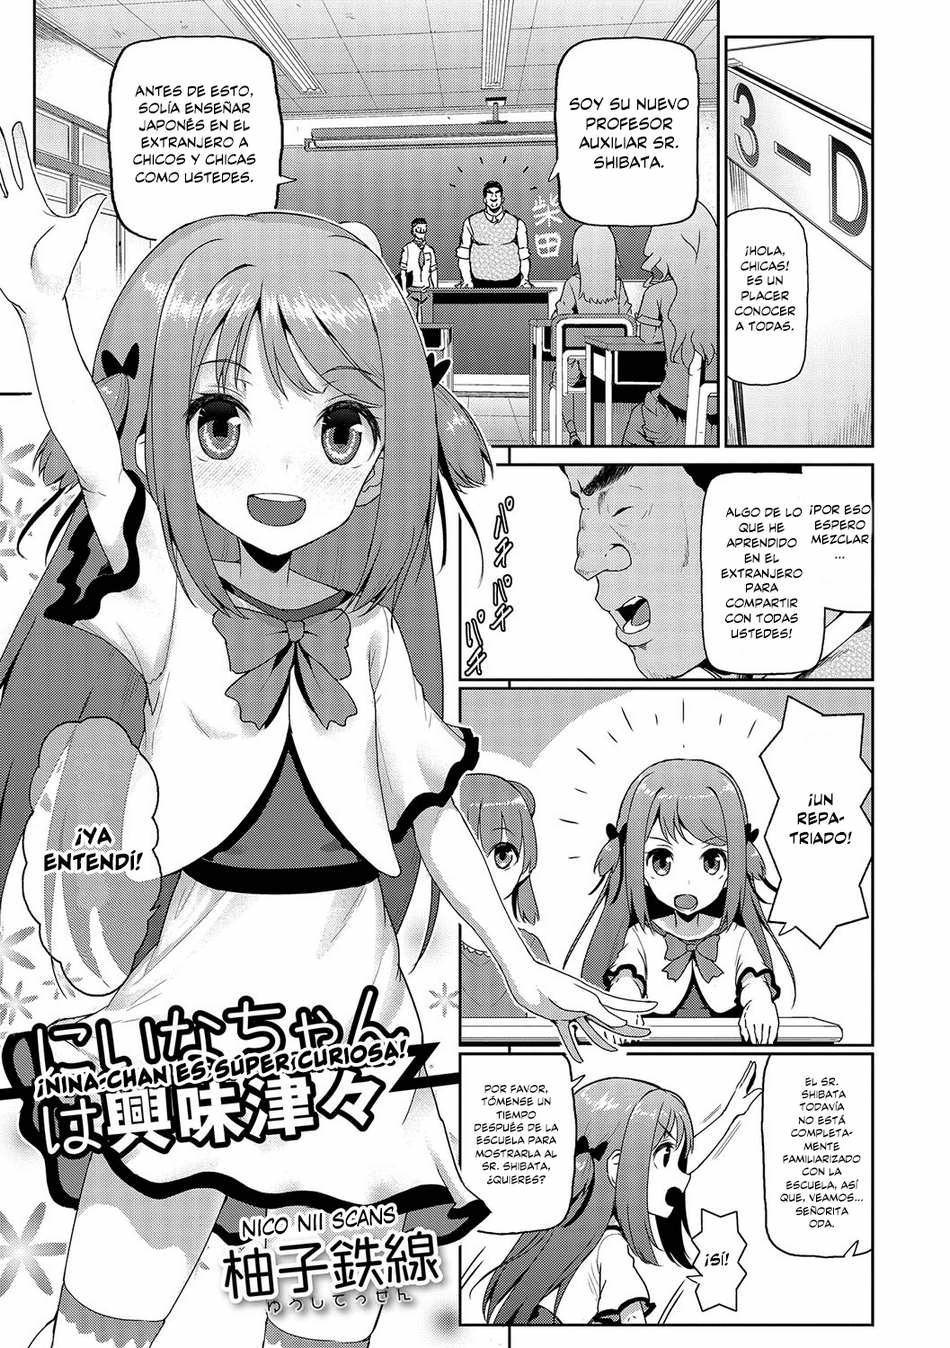 ¡Nina-chan es súper curiosa! - Page #1